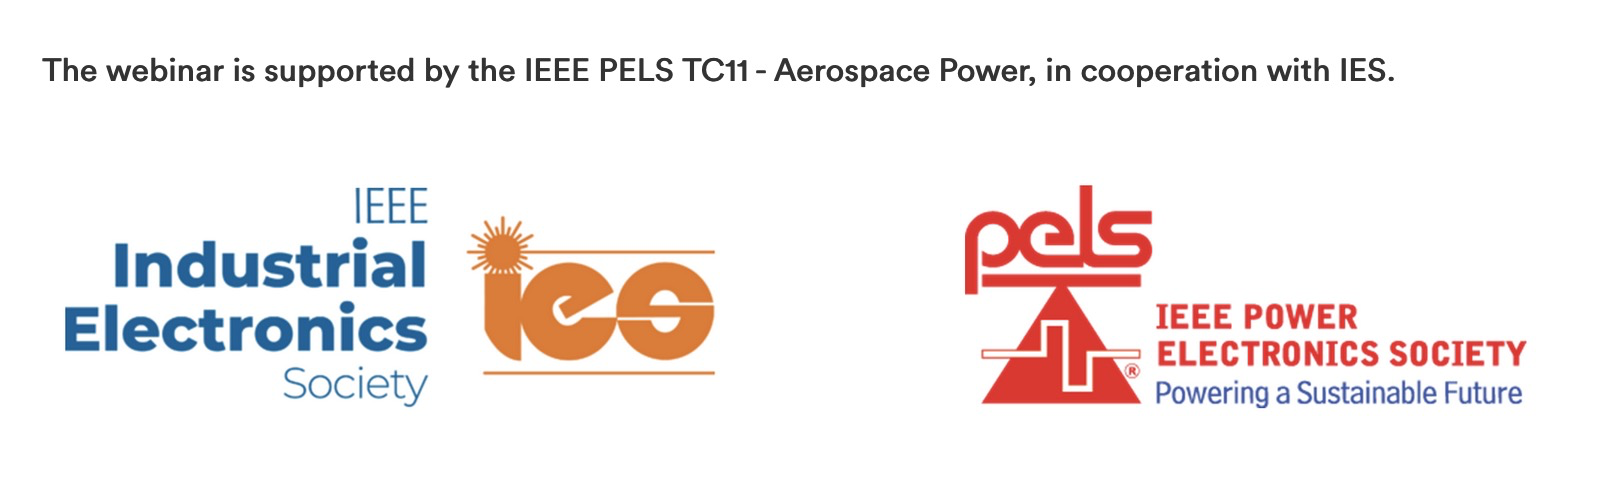 PELS-IES logo